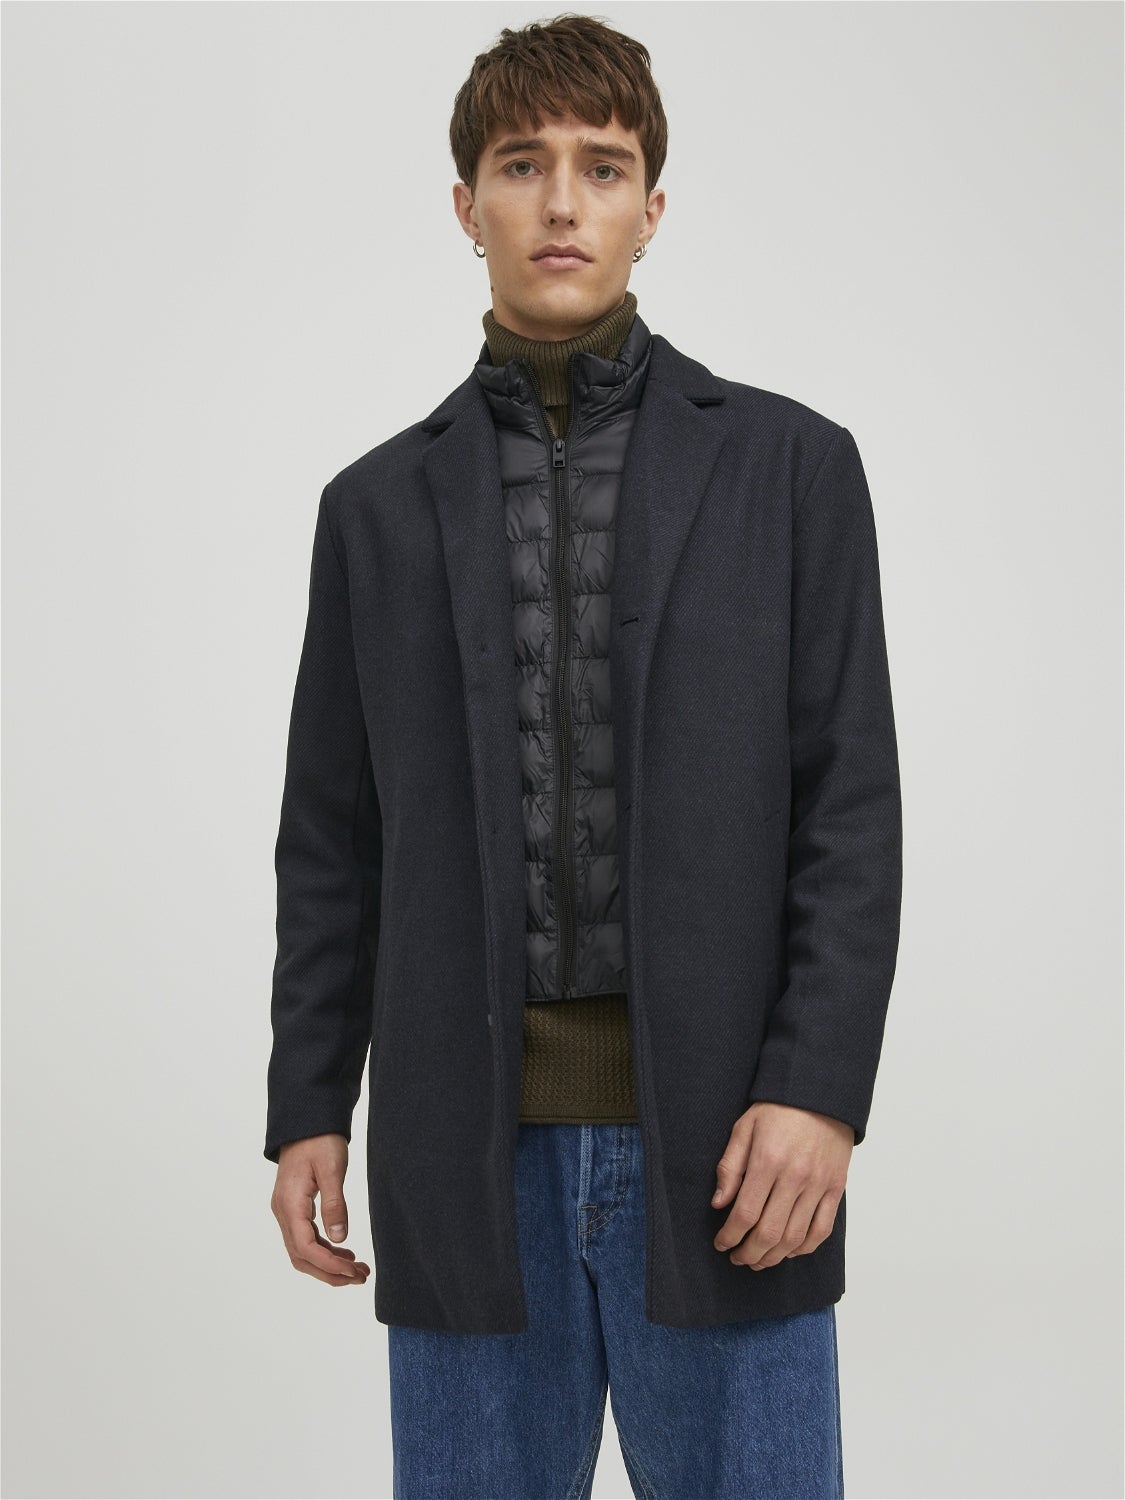 Uomo Abbigliamento da Cappotti da Cappotti lunghi e invernali Premium soprabitoJack & Jones in Lana da Uomo colore Blu 